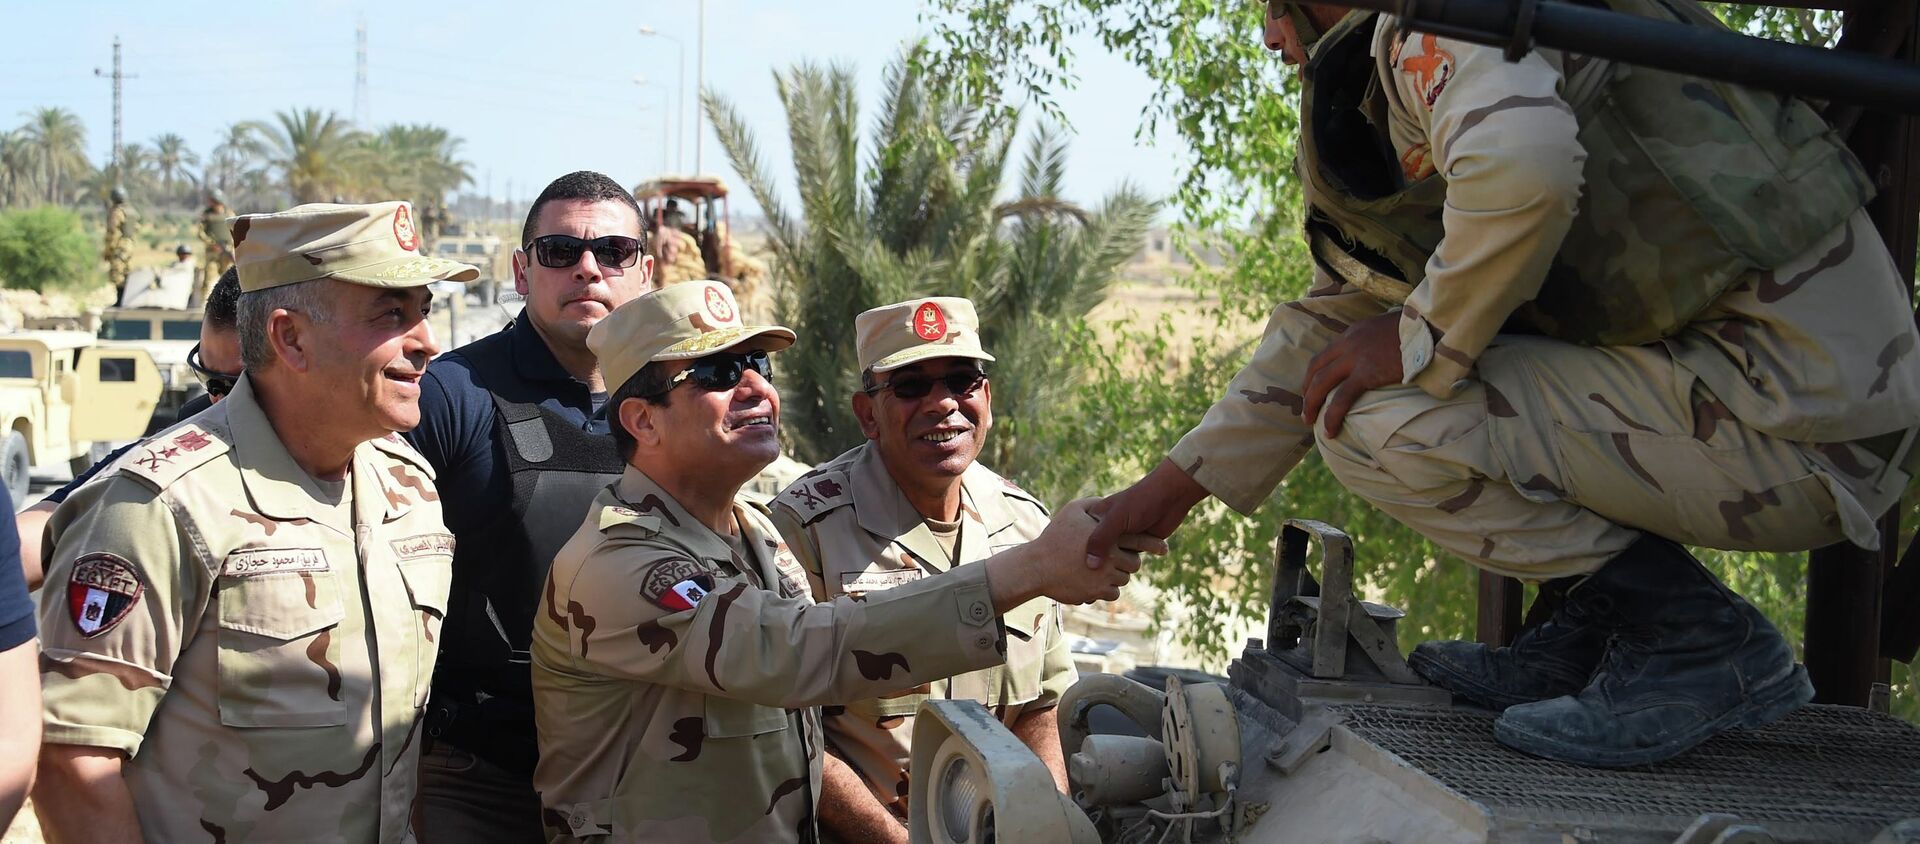 الرئيس المصري يعود الى الزى العسكري مرة أخري لأول مرة منذ إنتخابه  - سبوتنيك عربي, 1920, 06.10.2021